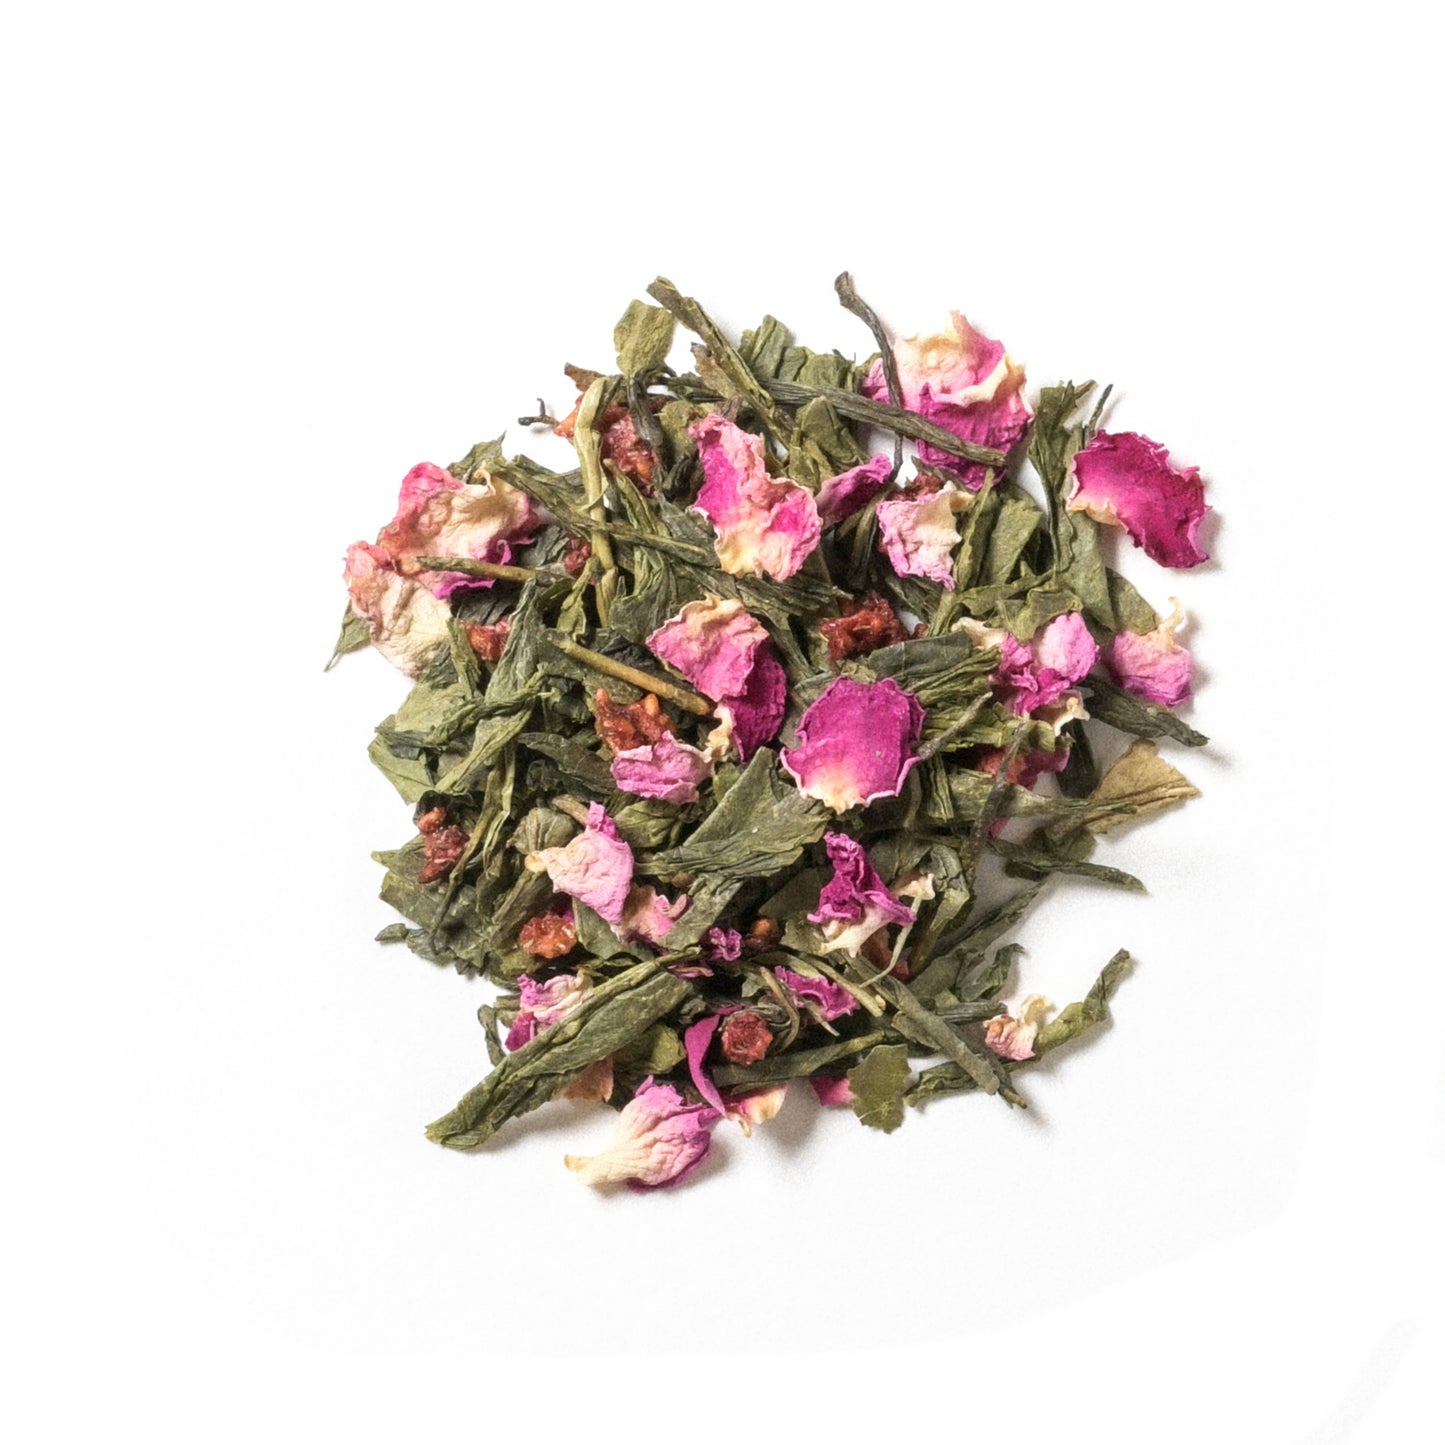 Apolis Tea - Raspberry Rose